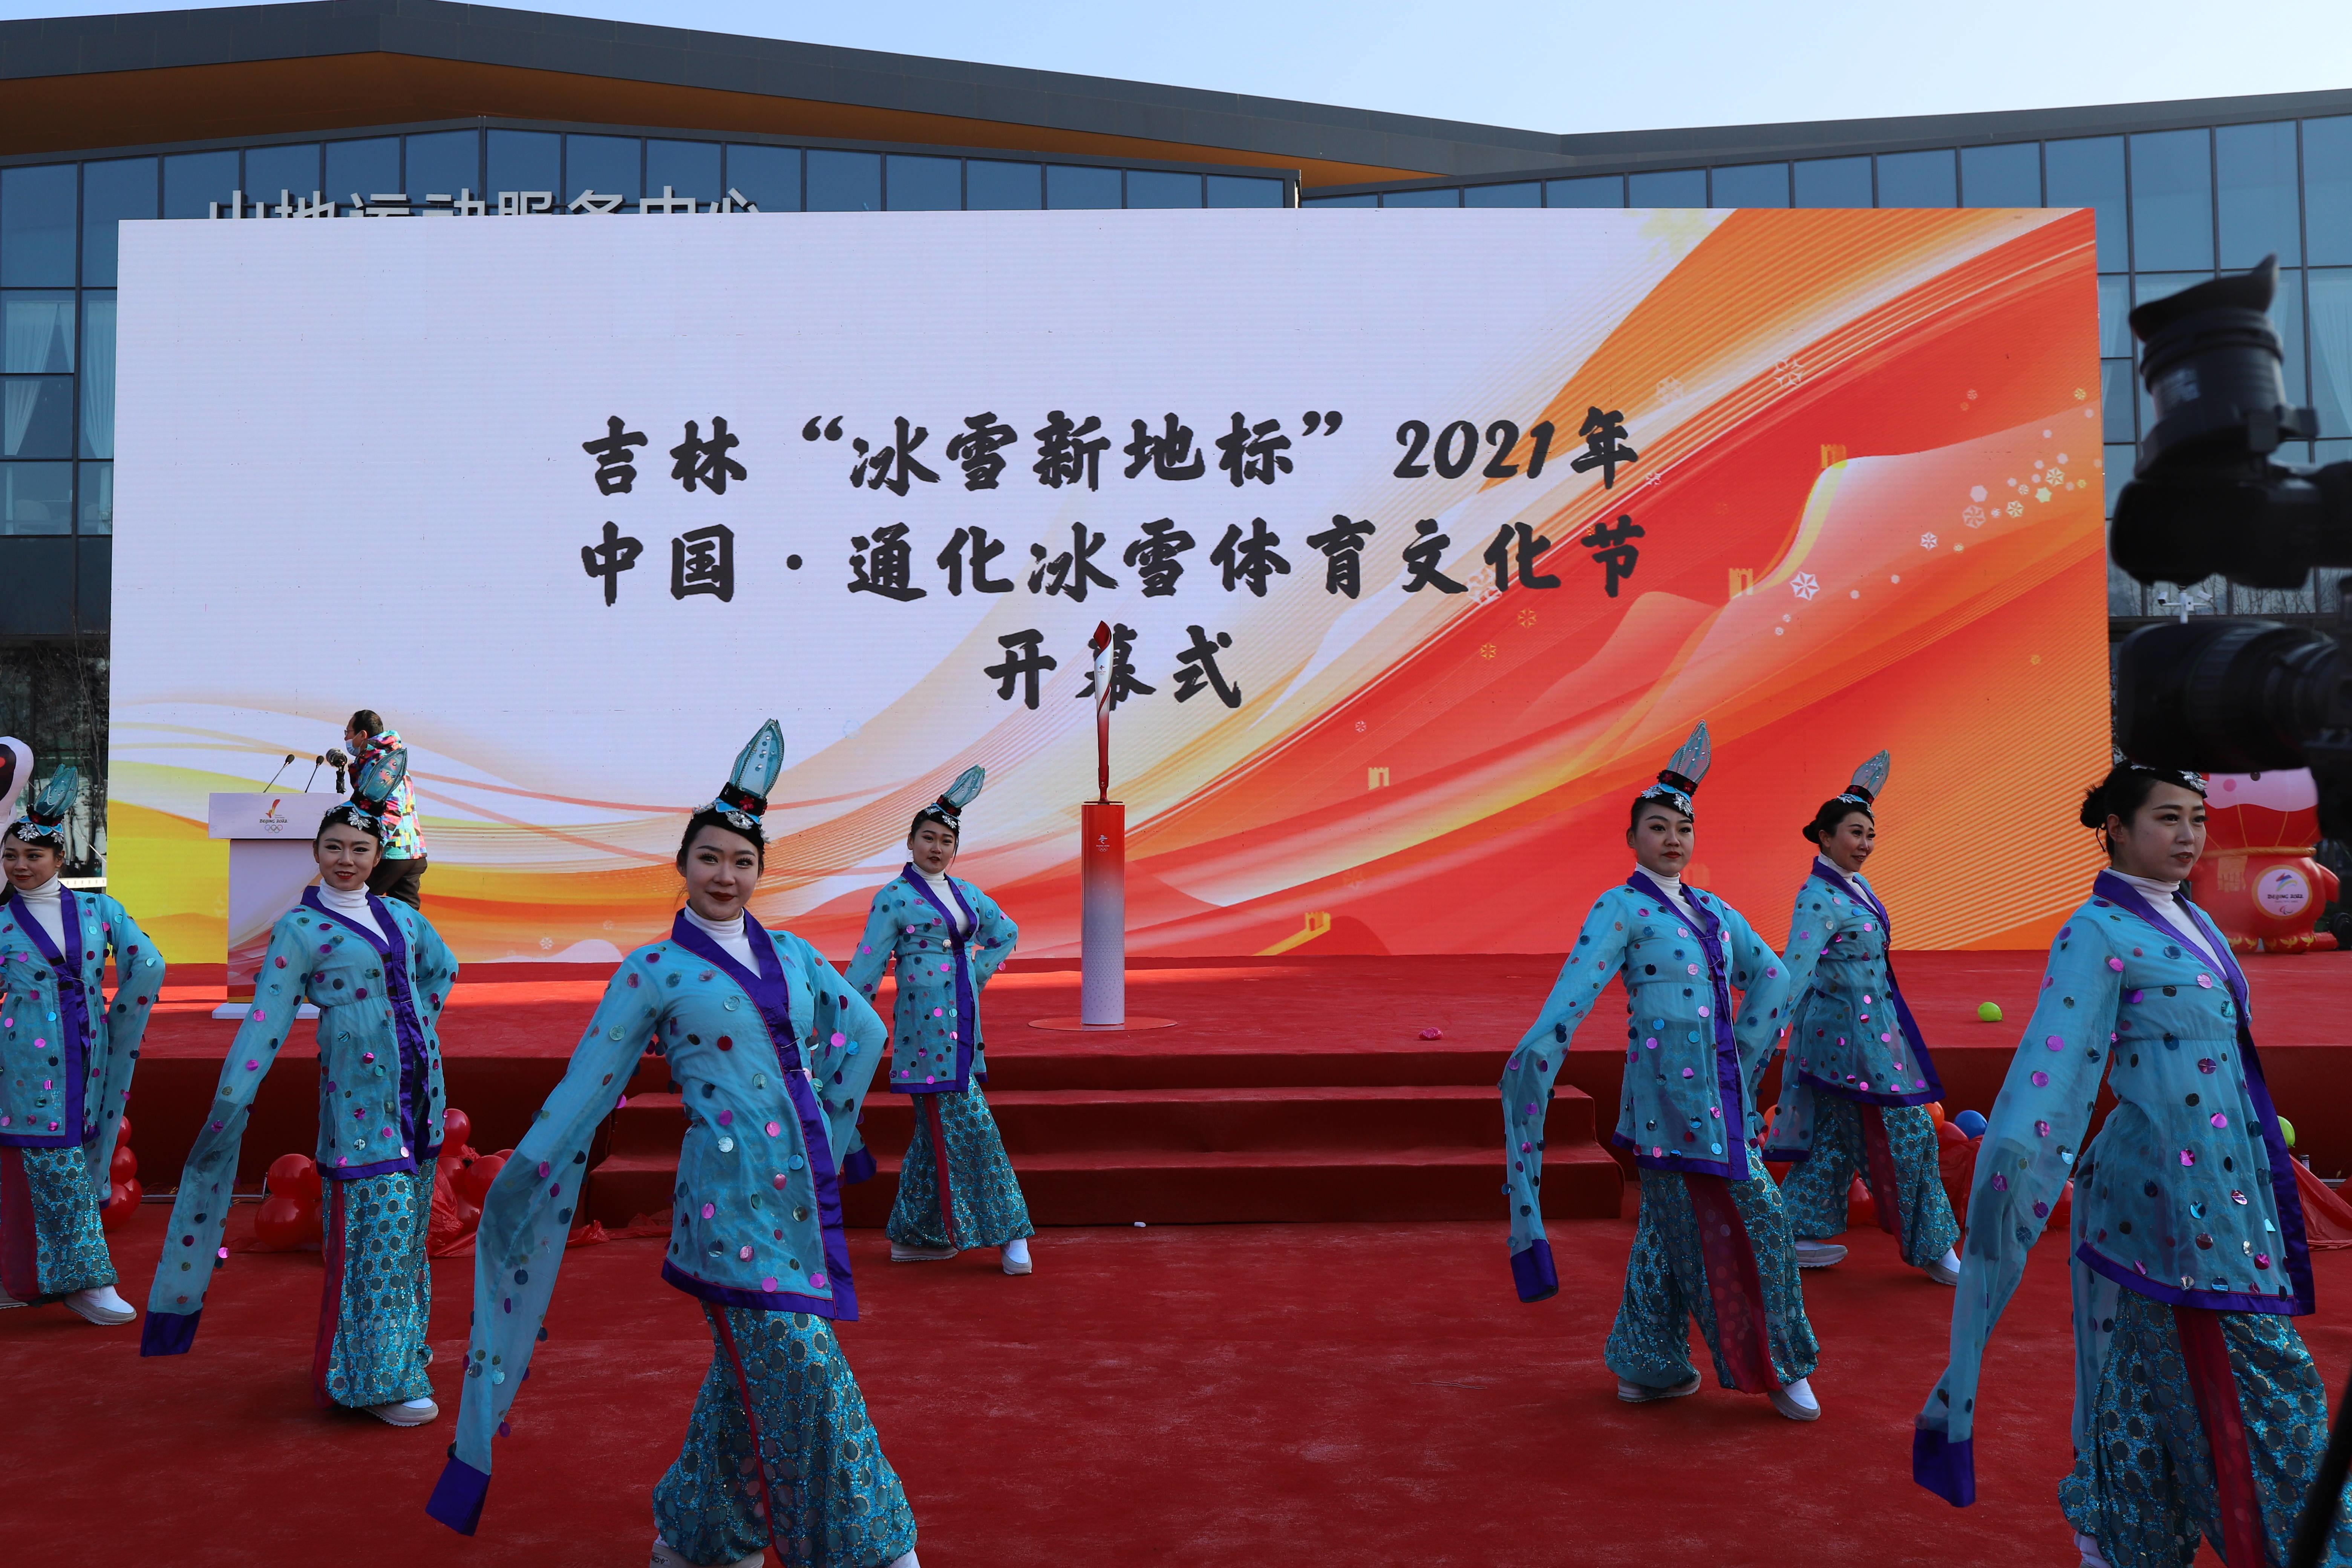 集安市评剧团有限责任公司参加北京2022年冬奥会火炬展示活动暨吉林“冰雪新地标”2021年中国·通化冰雪体育文化节开幕式